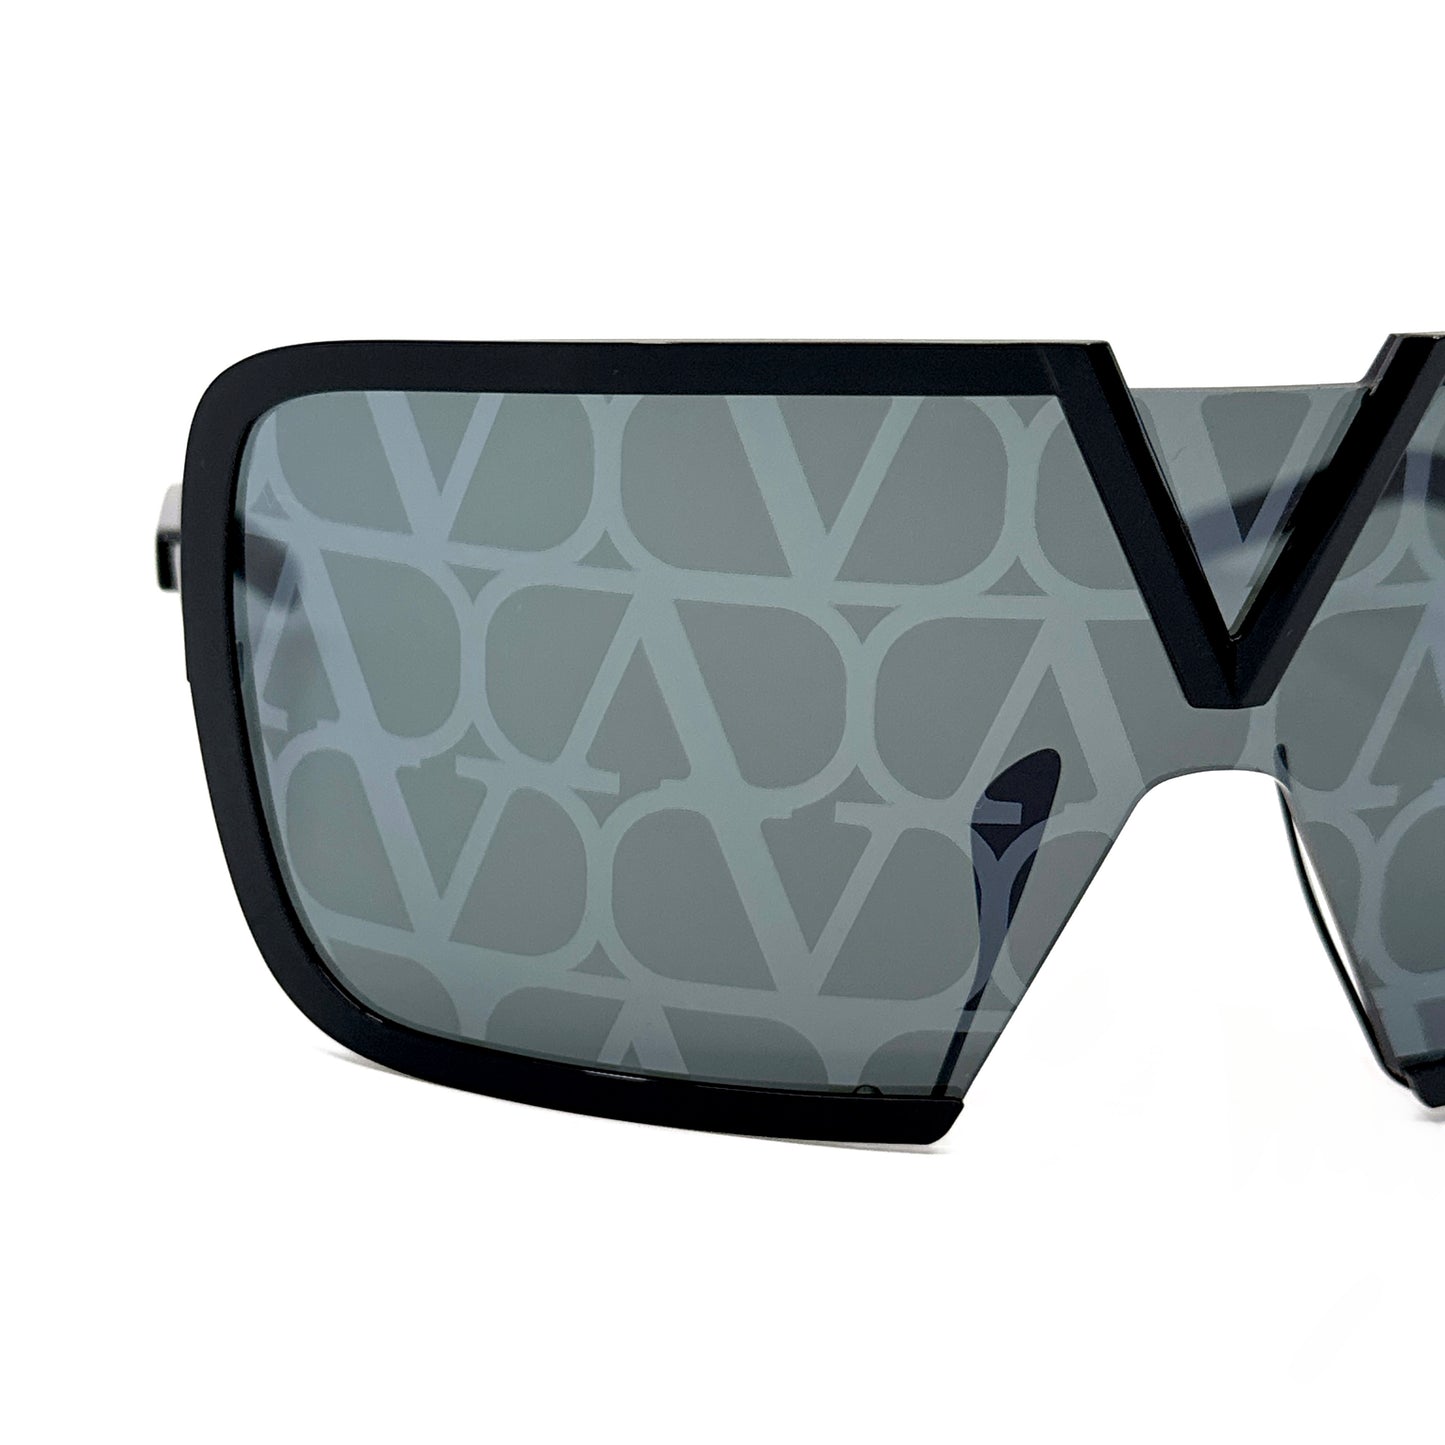 VALENTINO Sunglasses V-ROMASK VLS-120D